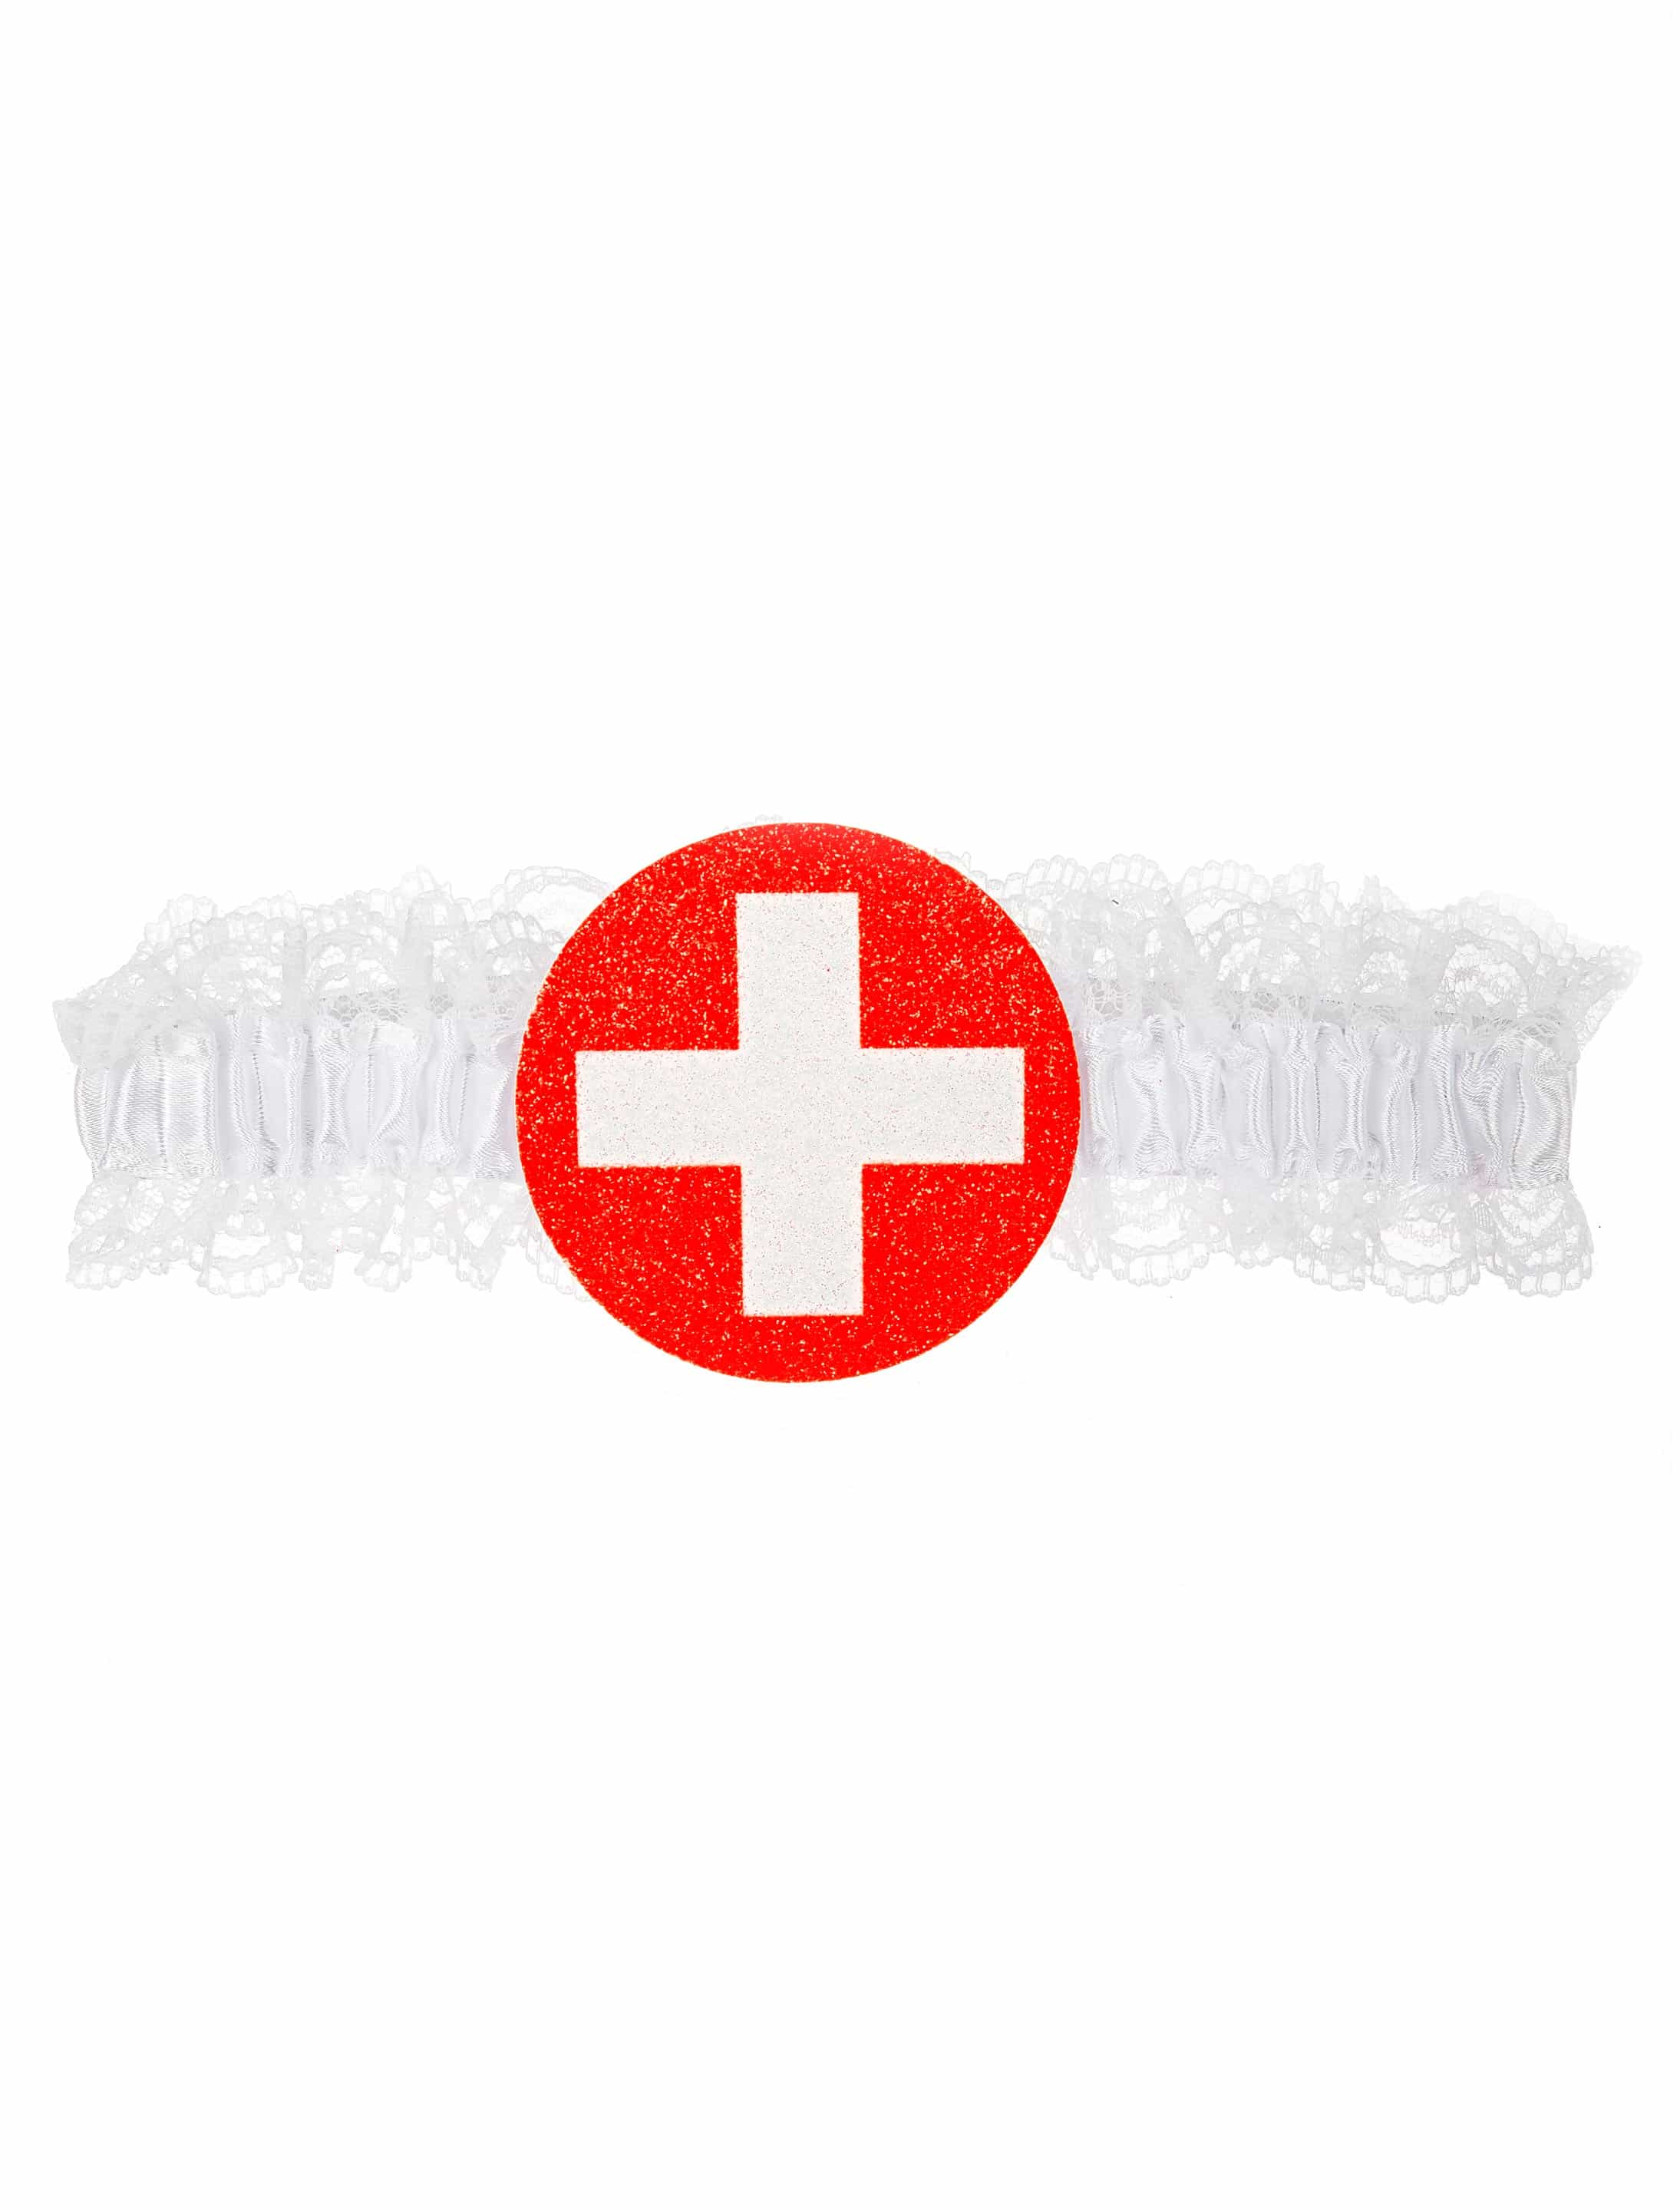 Strumpfband Krankenschwester mit Kreuz